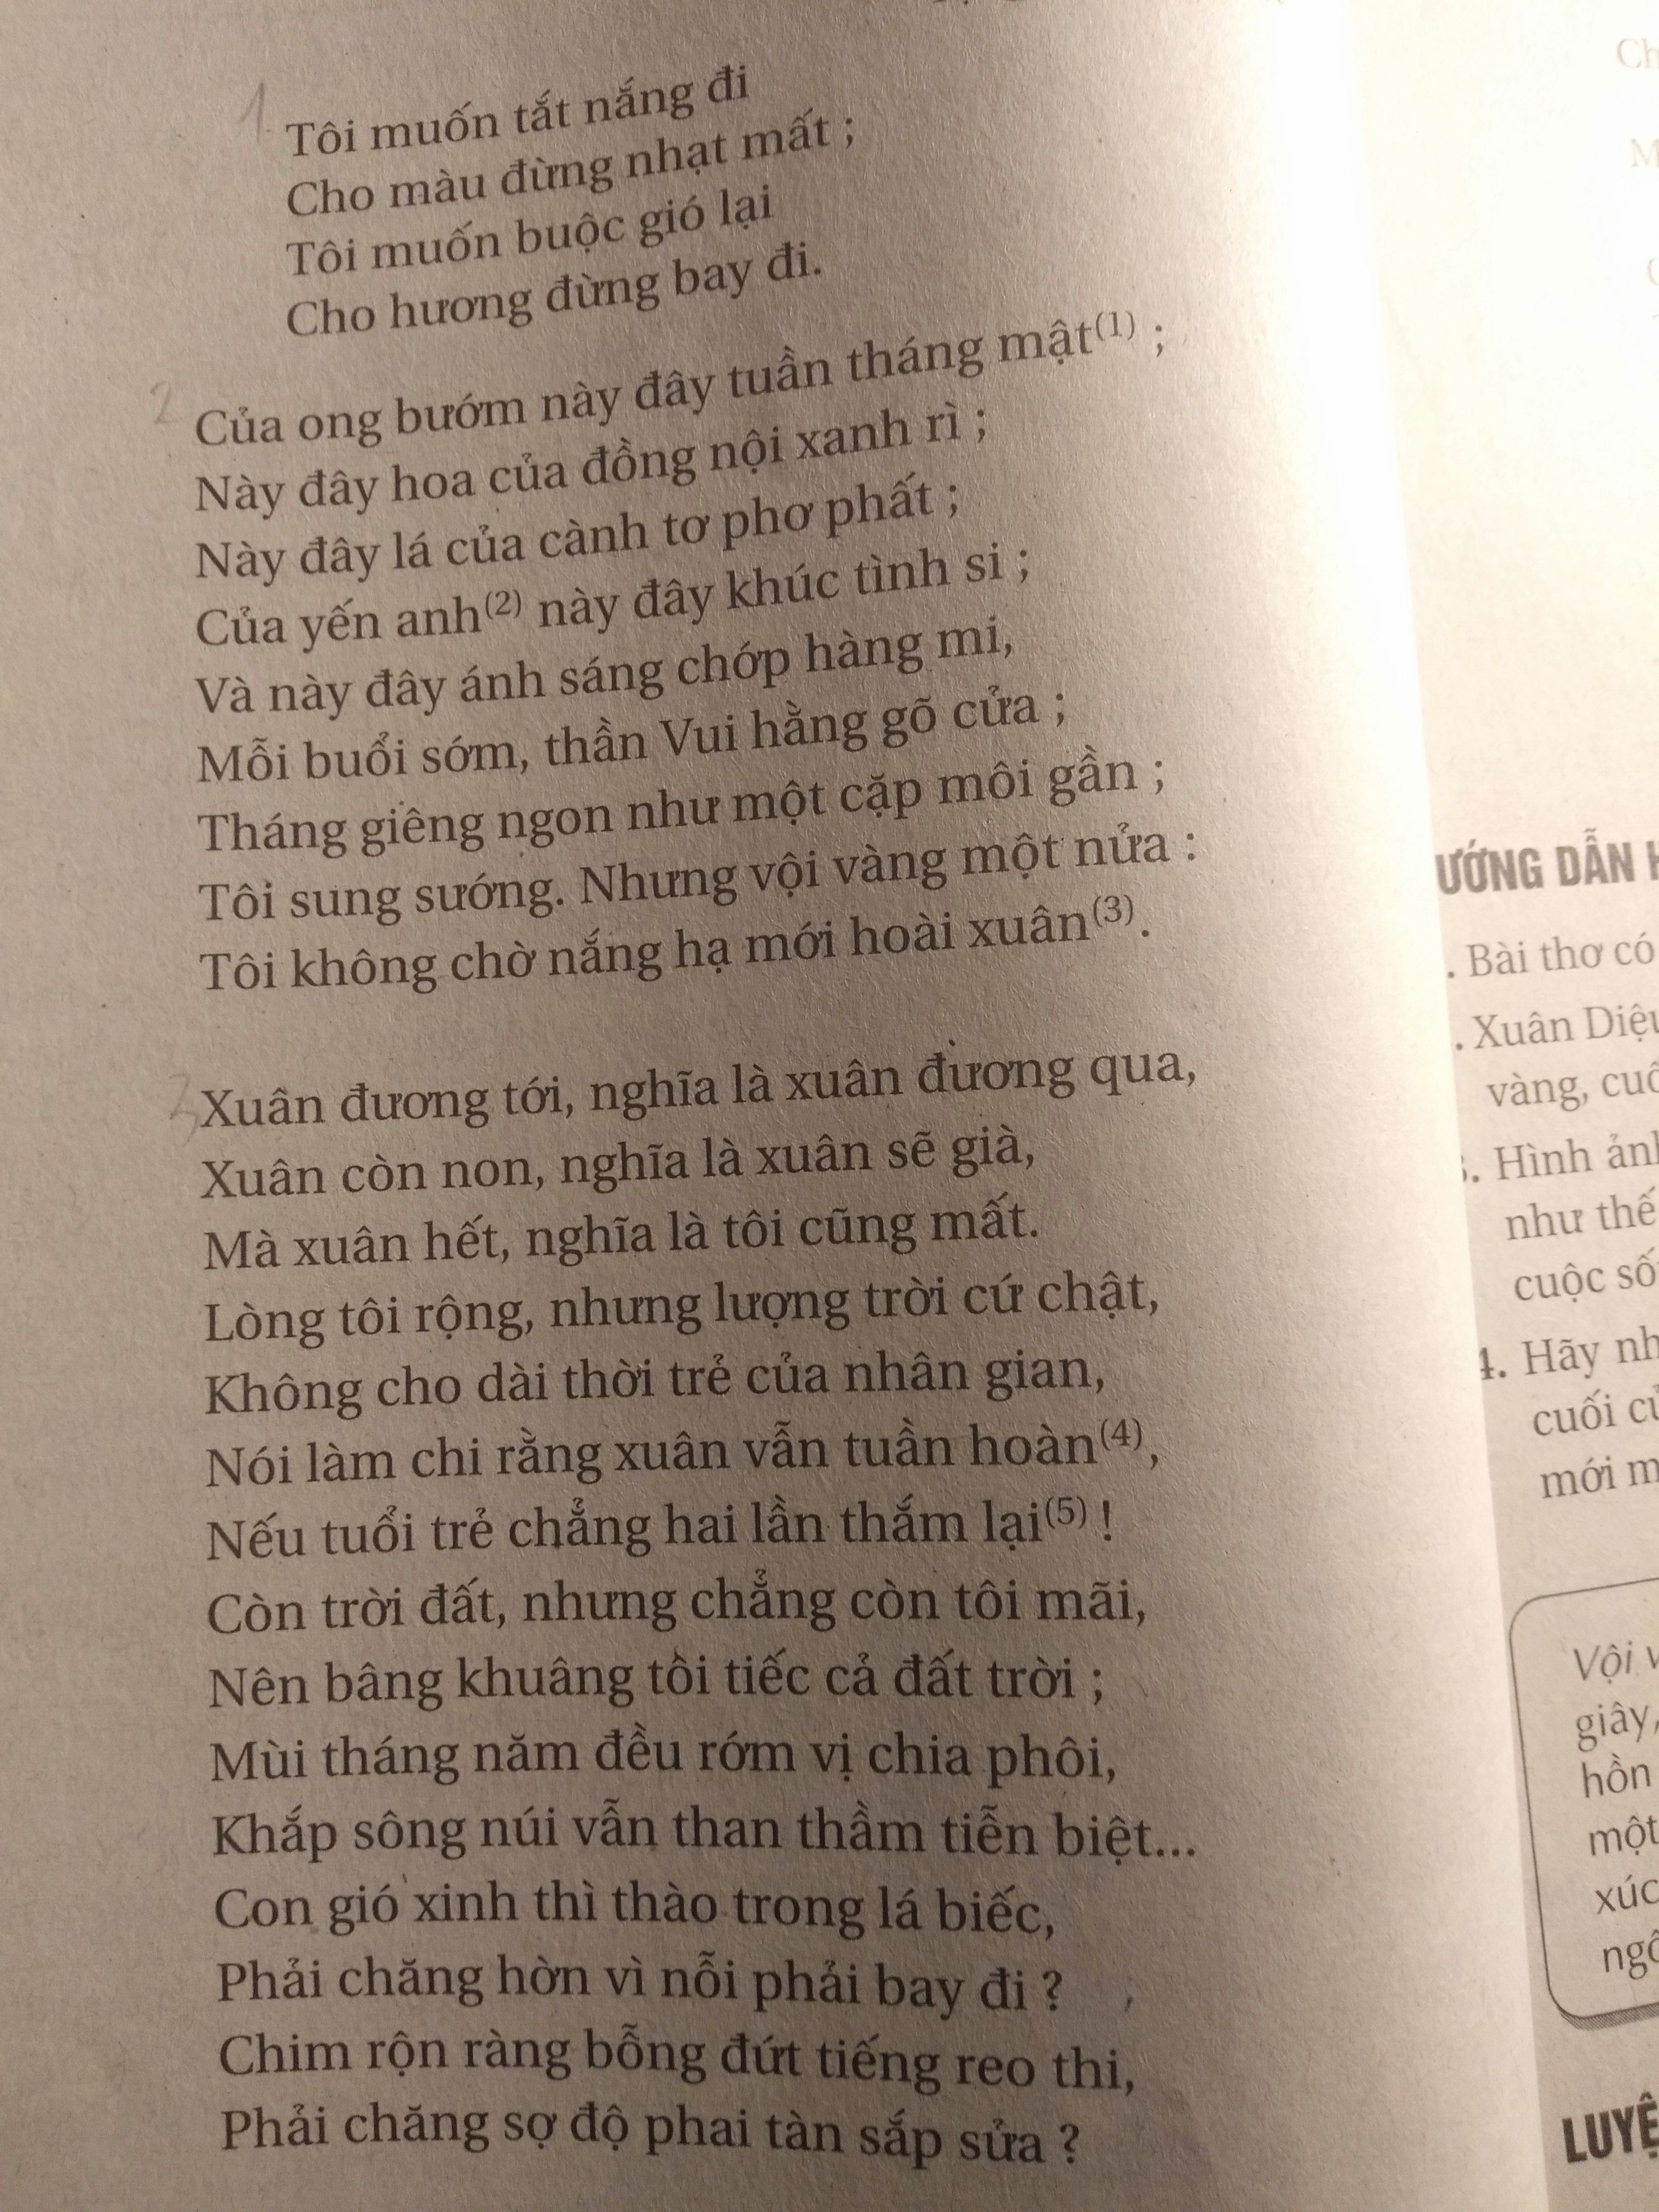 Xuân Diệu là một trong những nhà thơ tài hoa của Việt Nam, những tác phẩm của ông luôn chứa đựng sự tinh tế và xúc cảm. Nếu bạn muốn hiểu rõ hơn về nghệ thuật thơ và tác phẩm của ông, hãy xem hình ảnh liên quan để tìm hiểu thêm về những bài thơ cổ điển và độc đáo nhất của Xuân Diệu nhé!